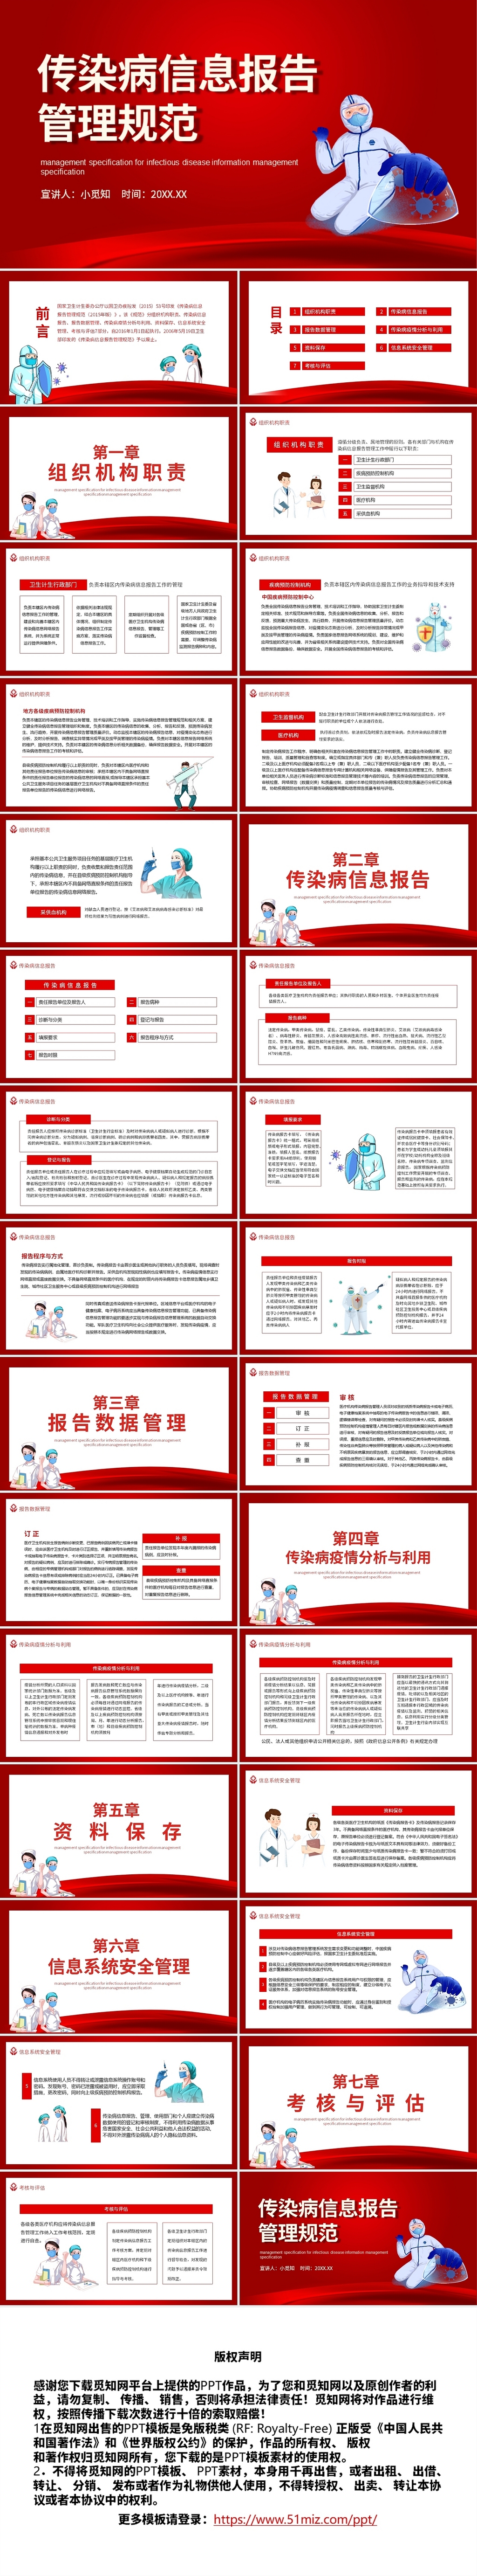 红色简约大气卡通人物传染病防治报告管理规范PPT模板传染病信息报告管理规范